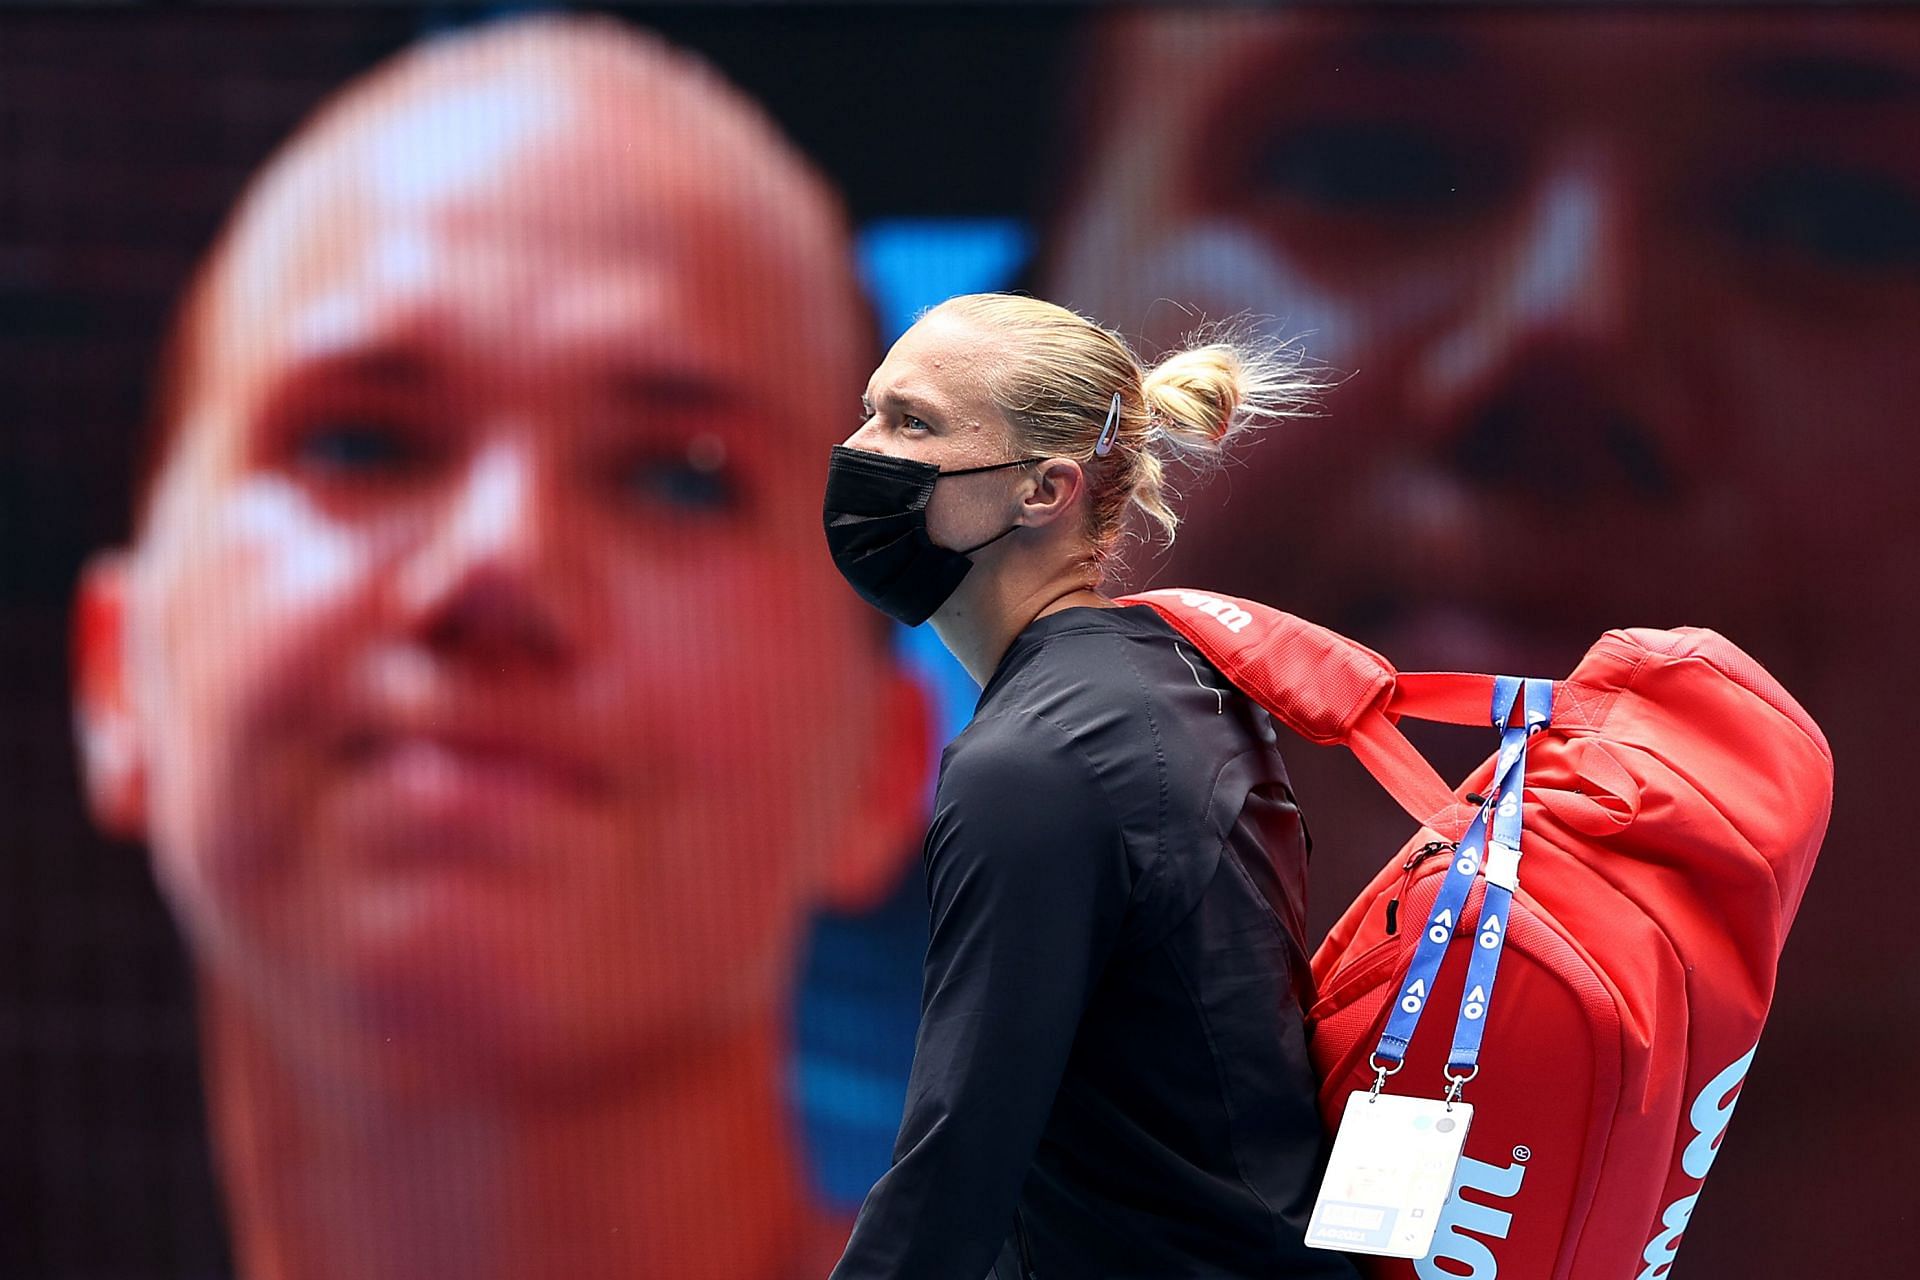 Kaia Kanepi at the 2021 Australian Open